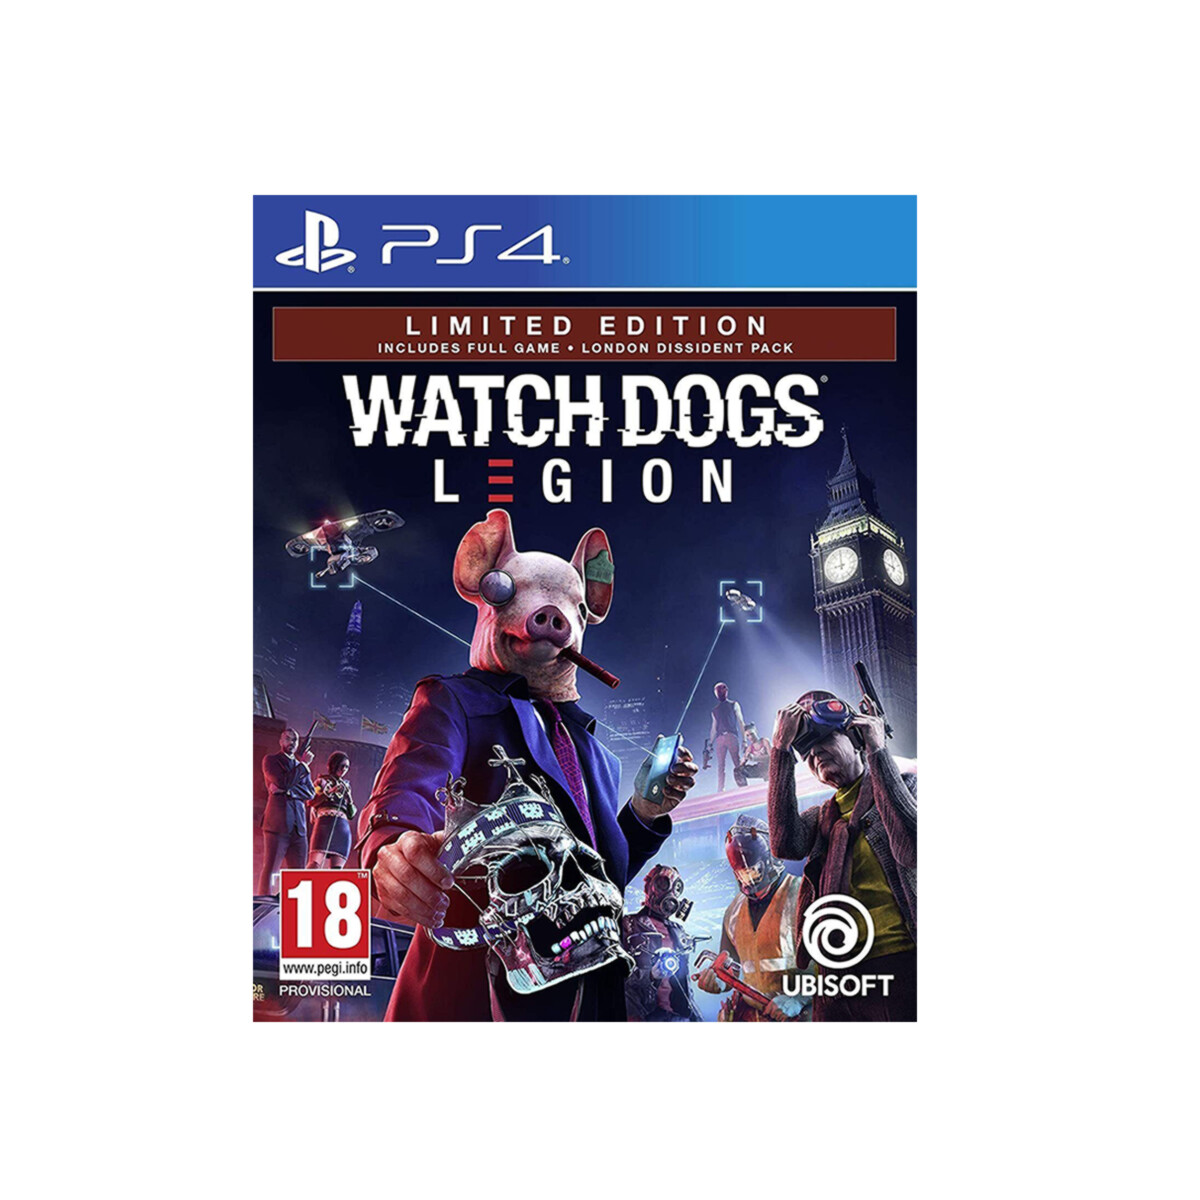 PS4 Watch Dogs Legion 